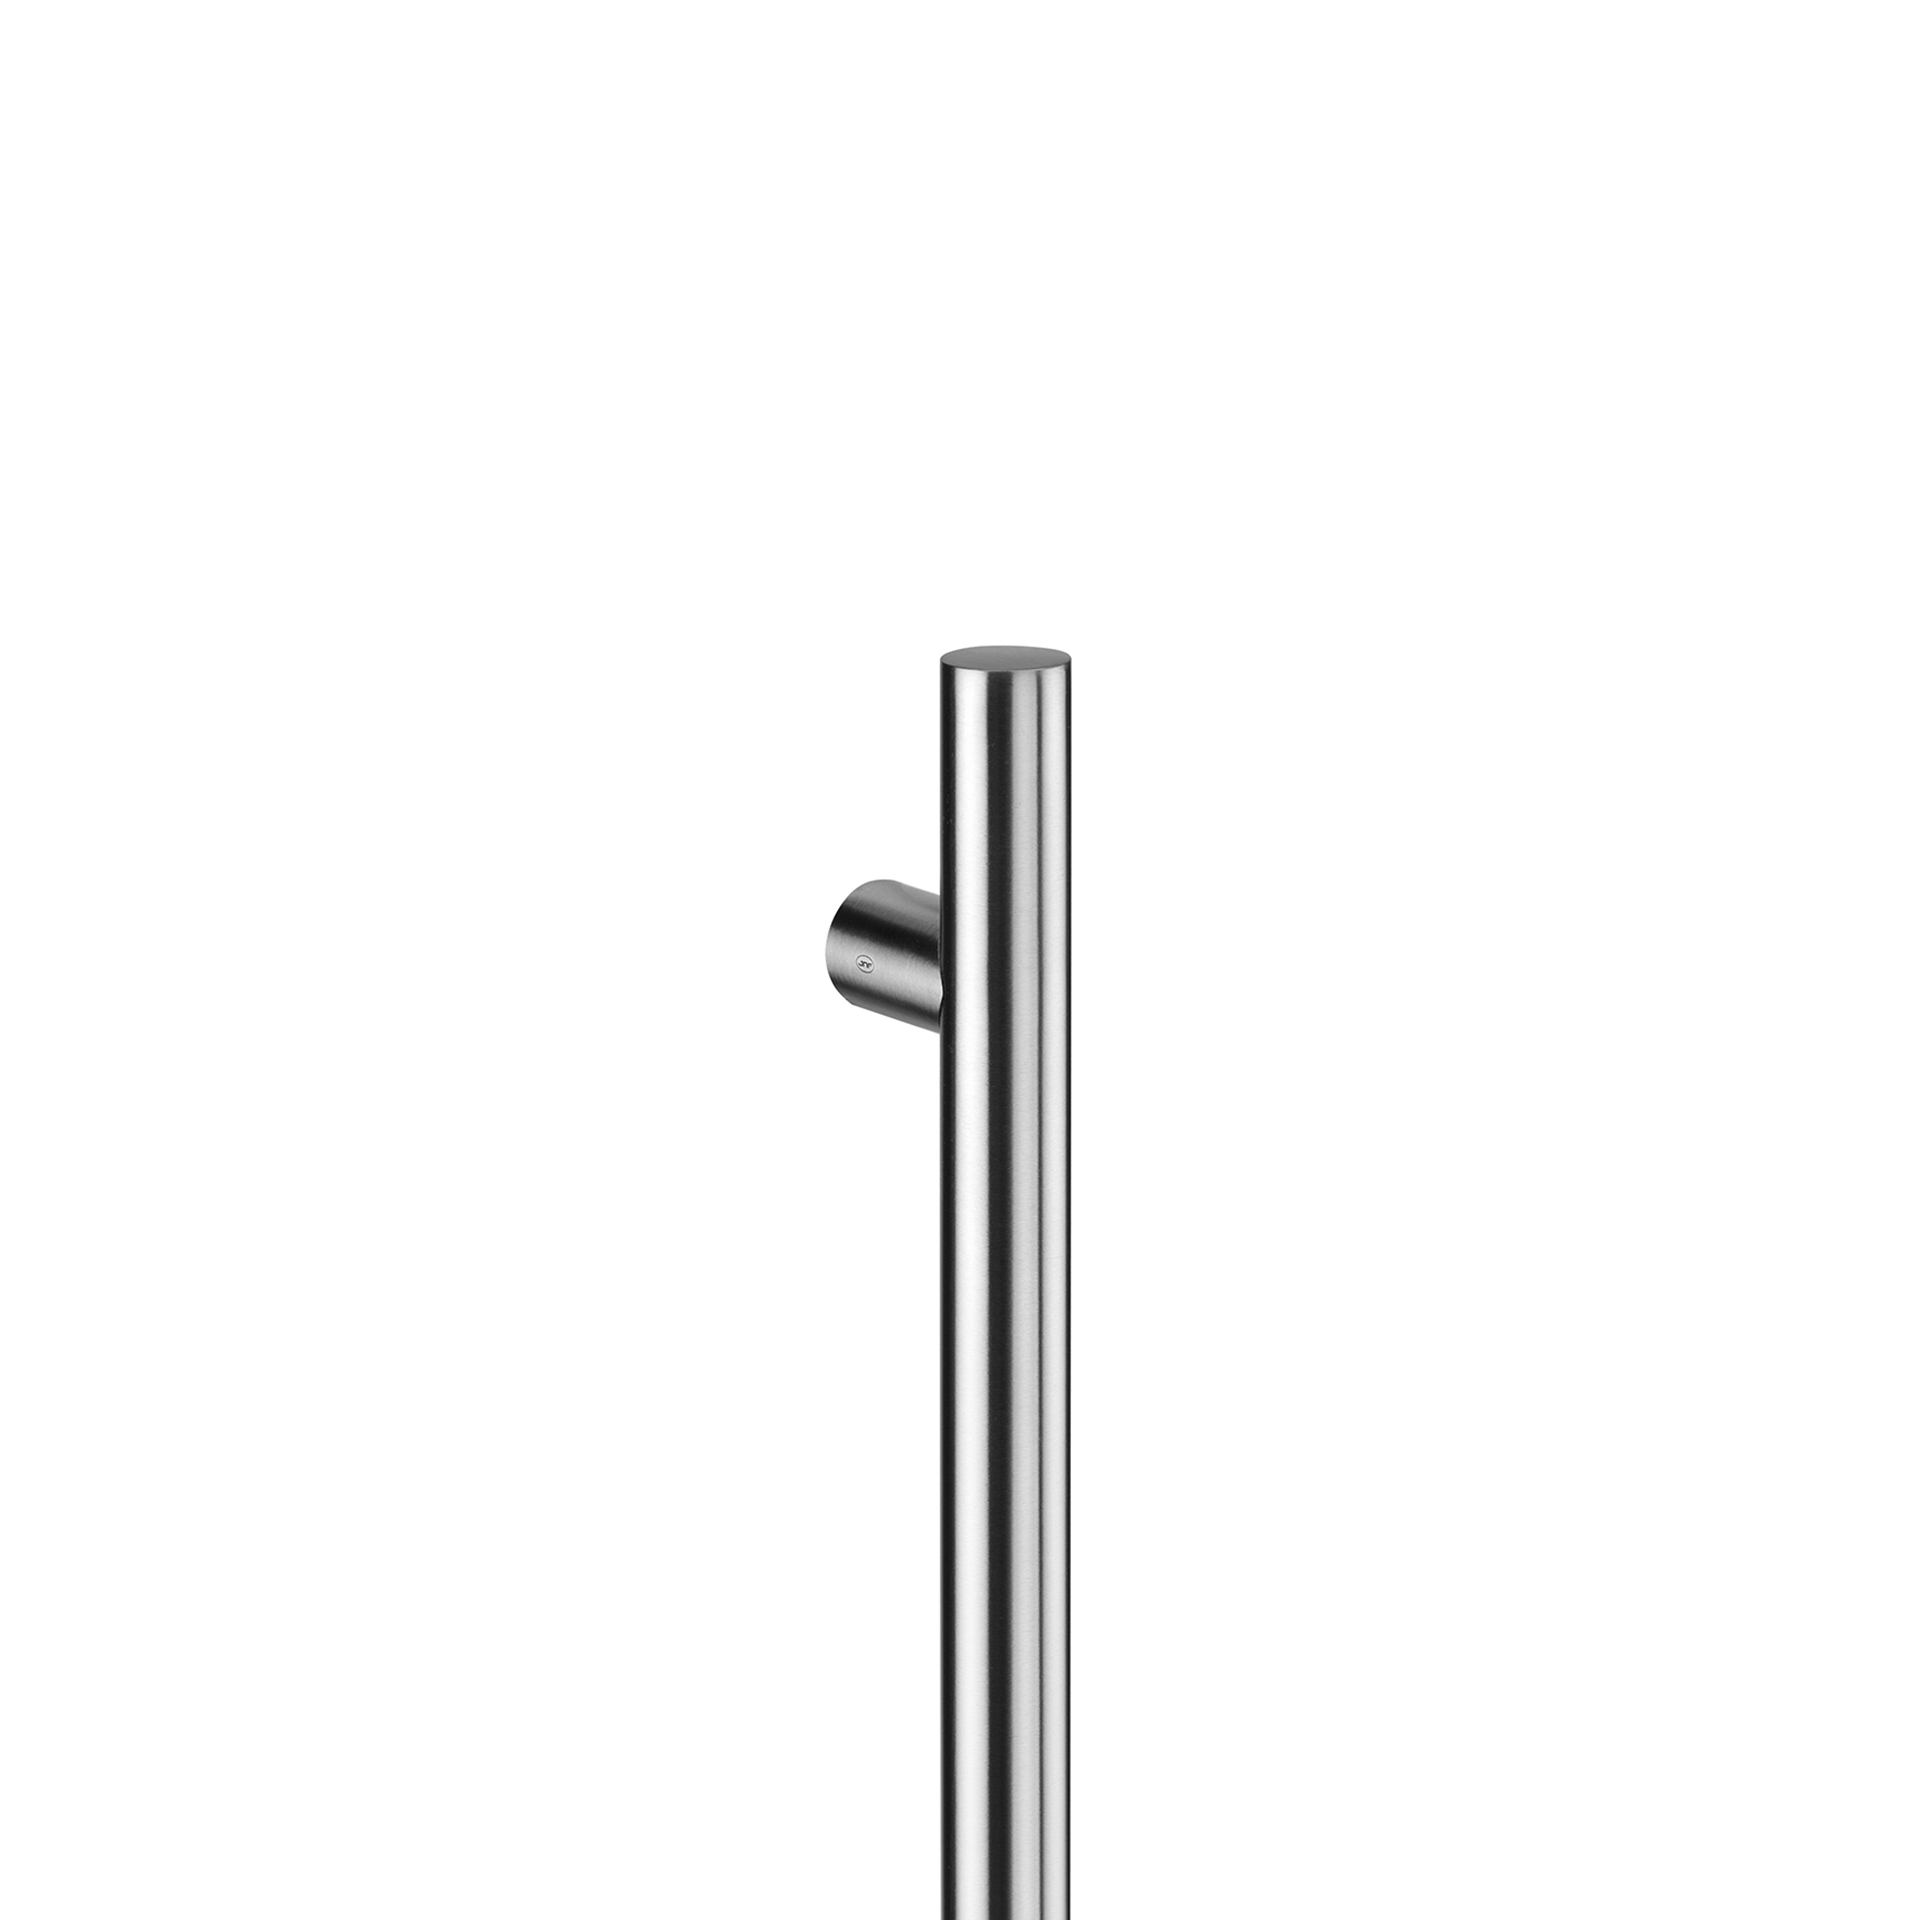 Tirador de puerta tipo H 600mm - IN.07.286.D.30.600 - Abstracta Soluciones